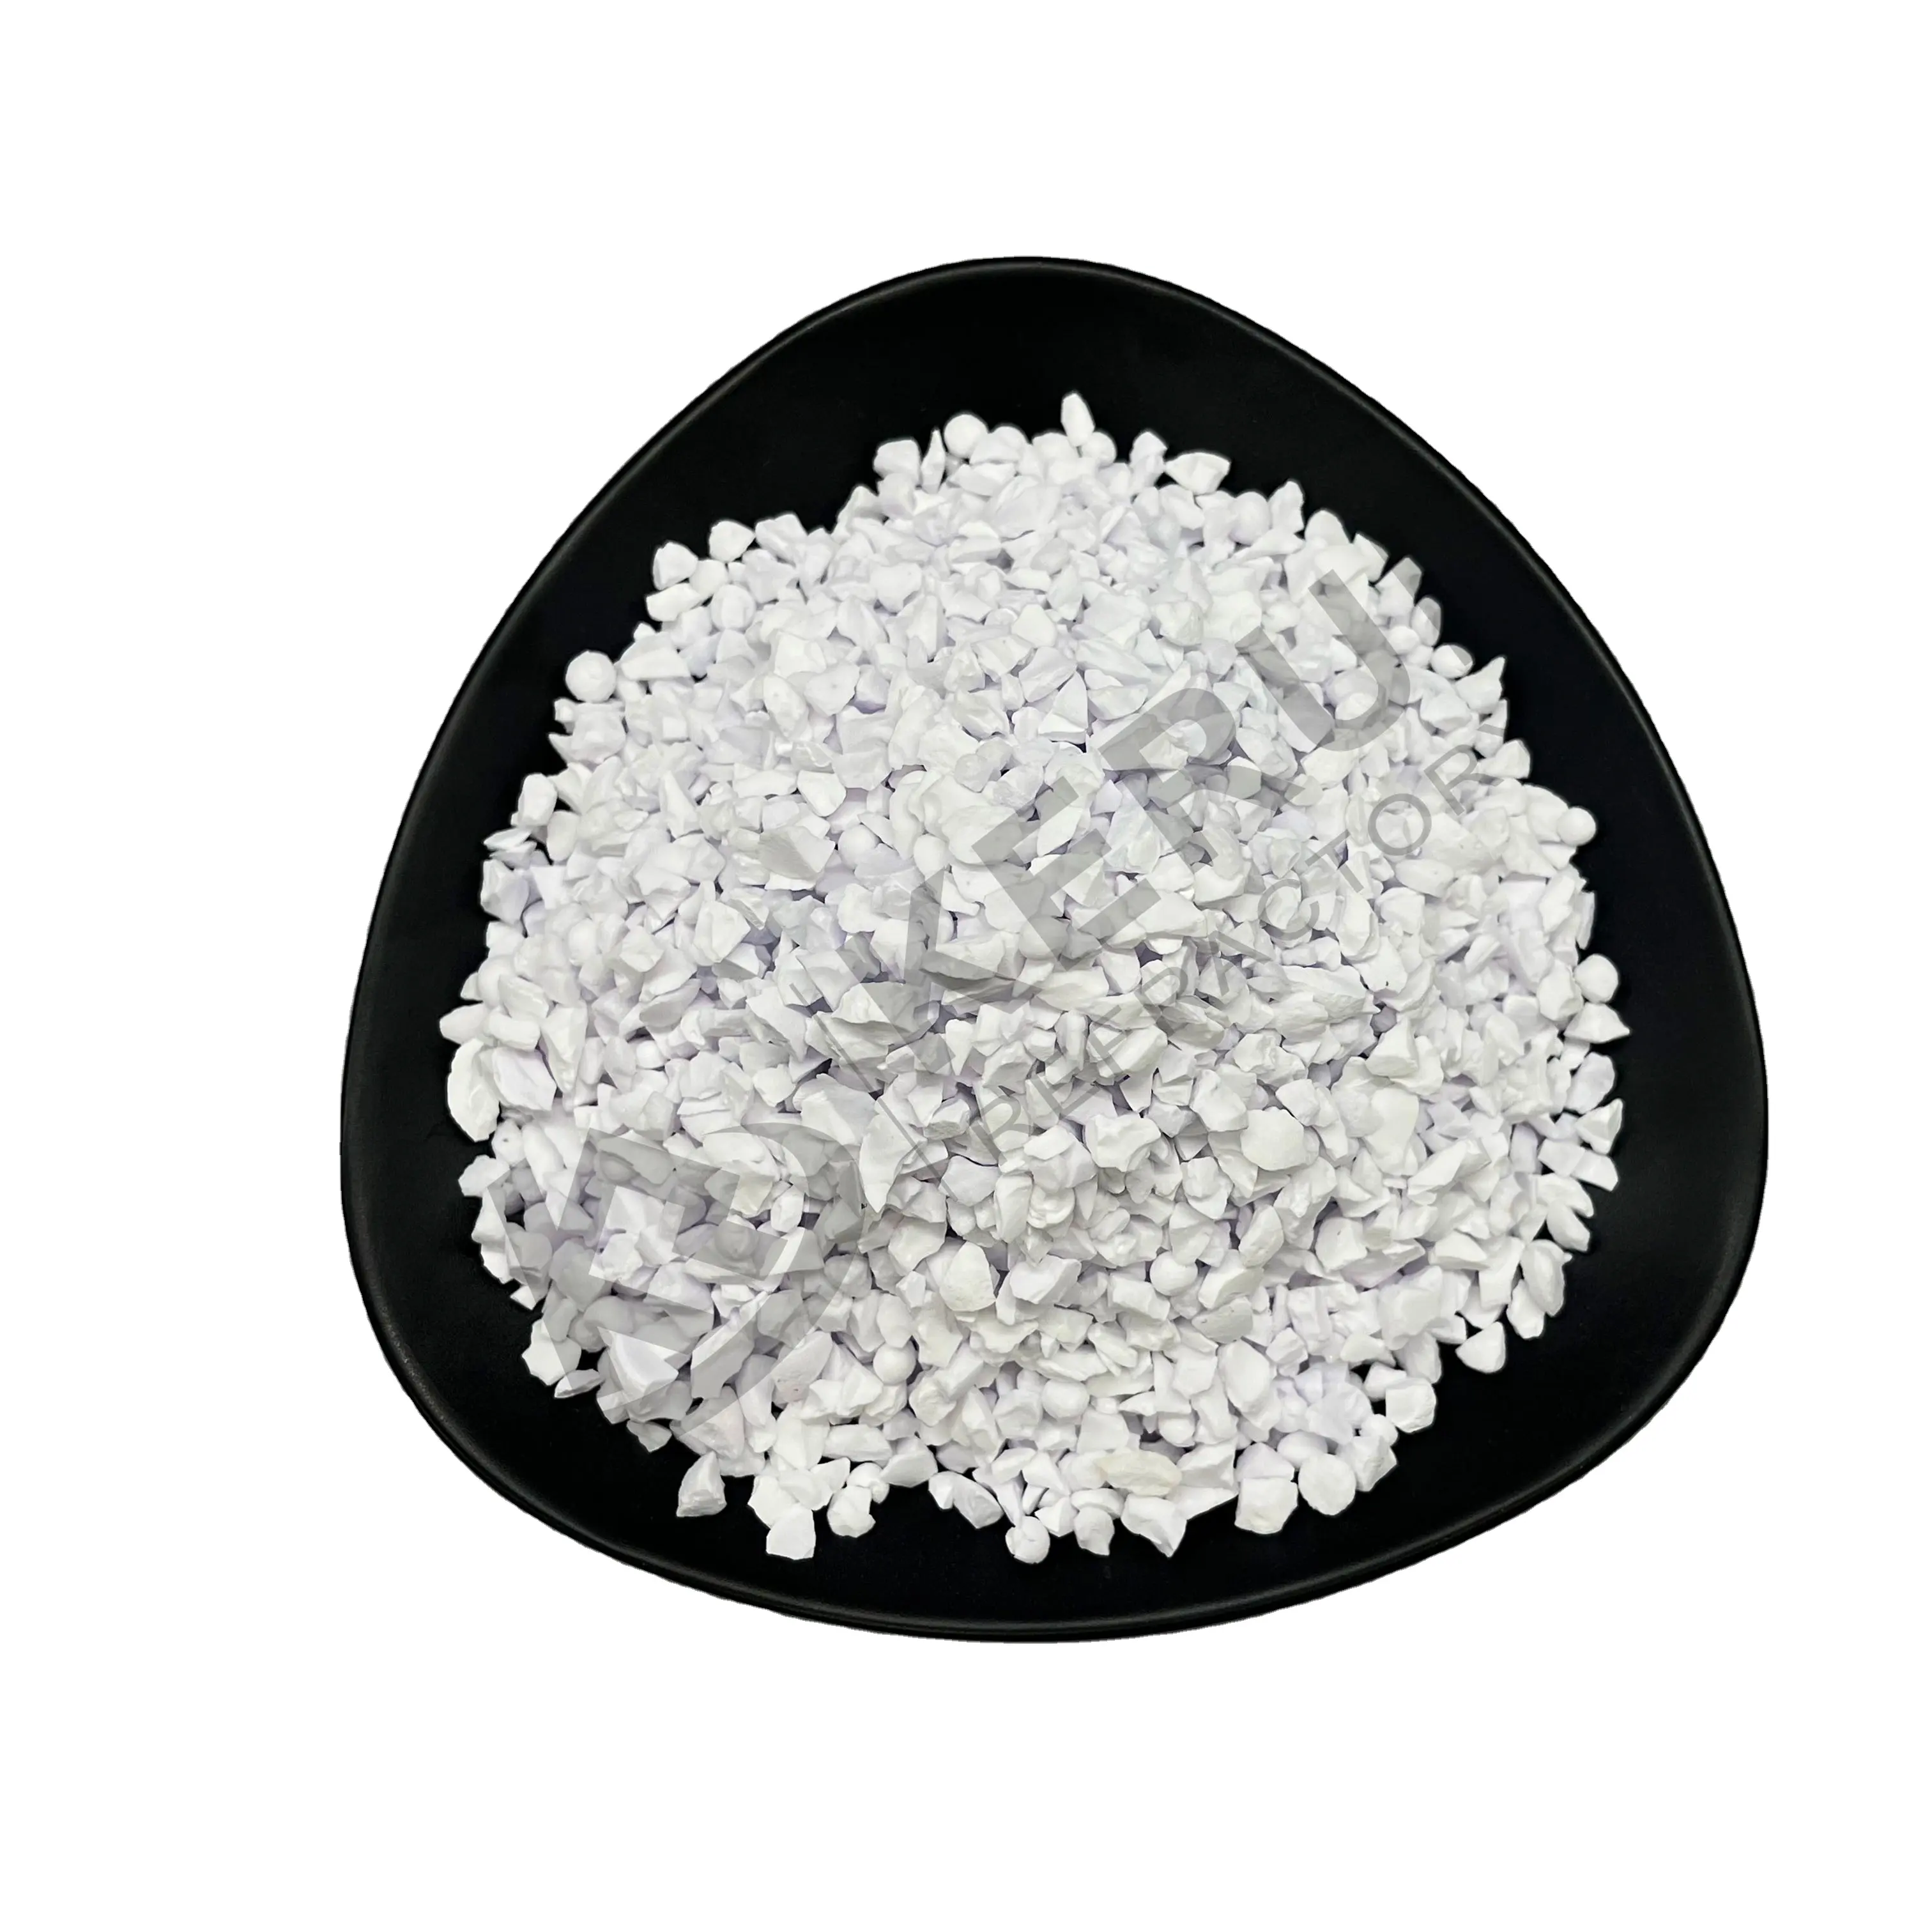 KERUI Tabular Alumina Supplier Various Granularity Aluminum Material 3-5 Mm 99%Al2O3